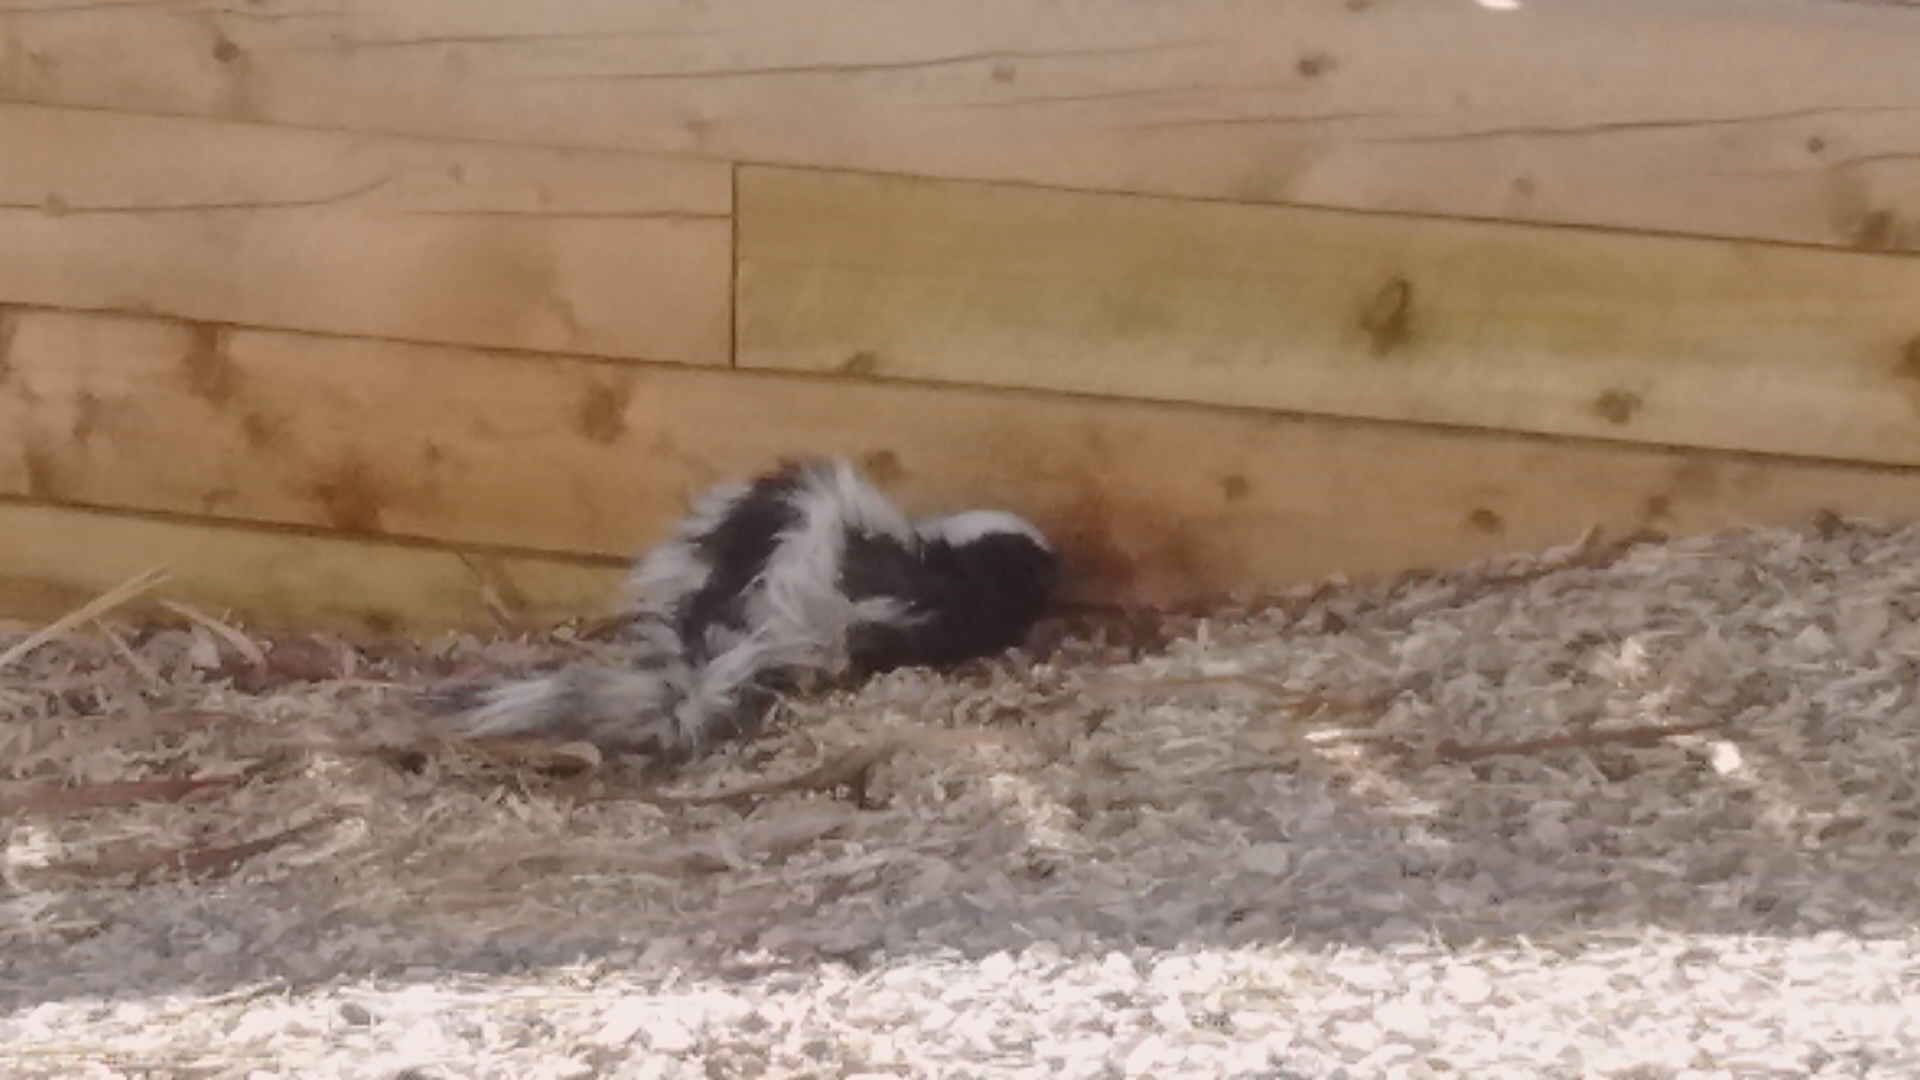 A rabid skunk in Brighton